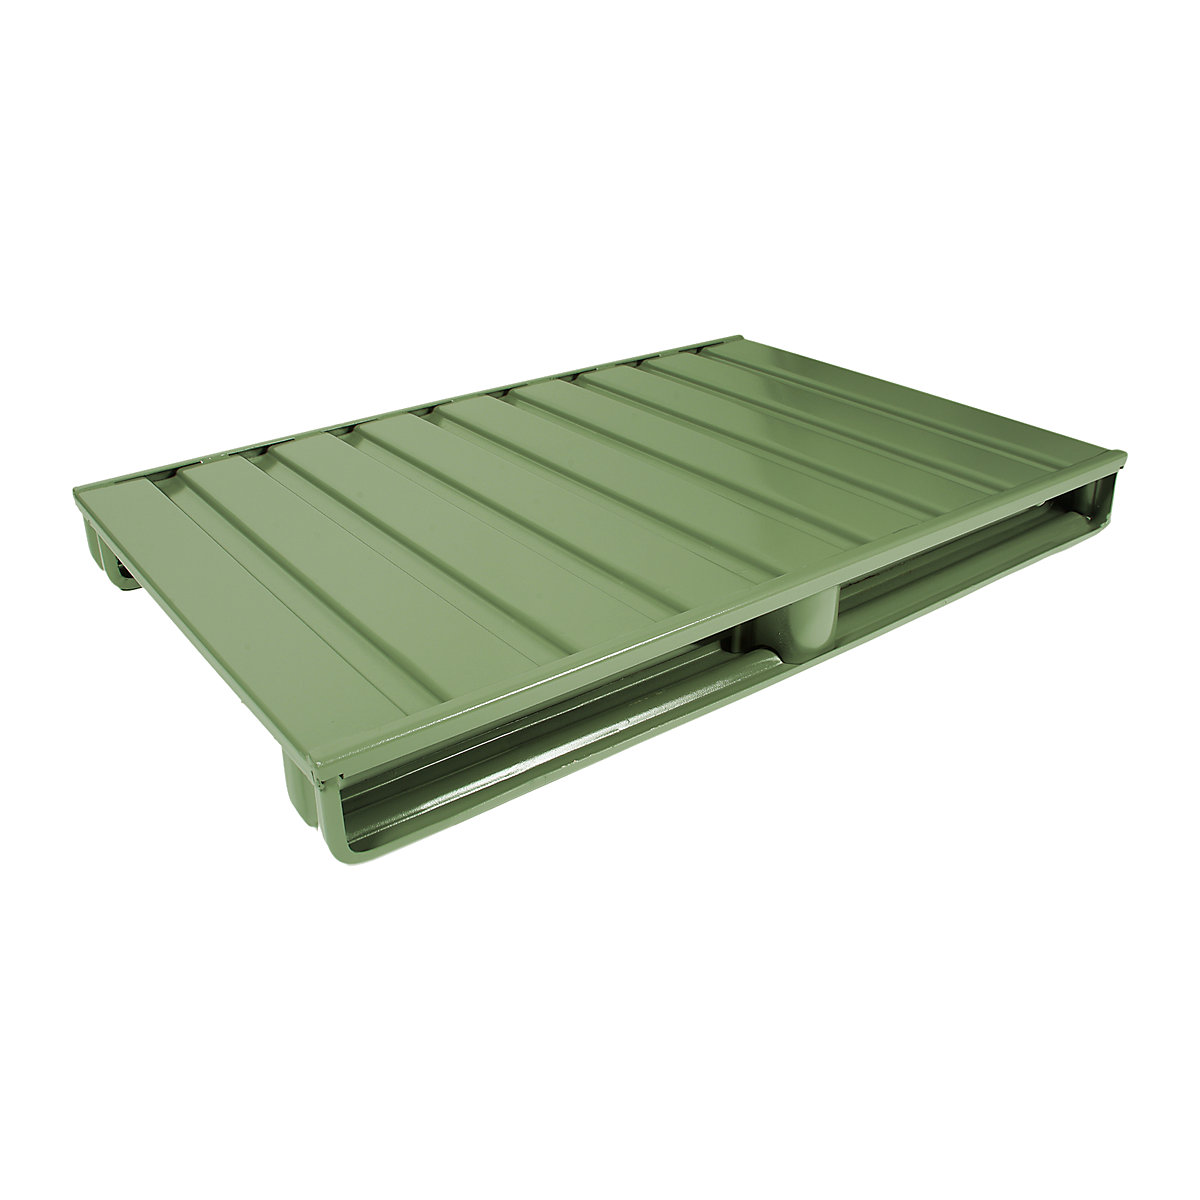 Palete plana de aço – Heson, CxL 1200 x 1000 mm, capacidade de carga 1500 kg, verde reseda-4